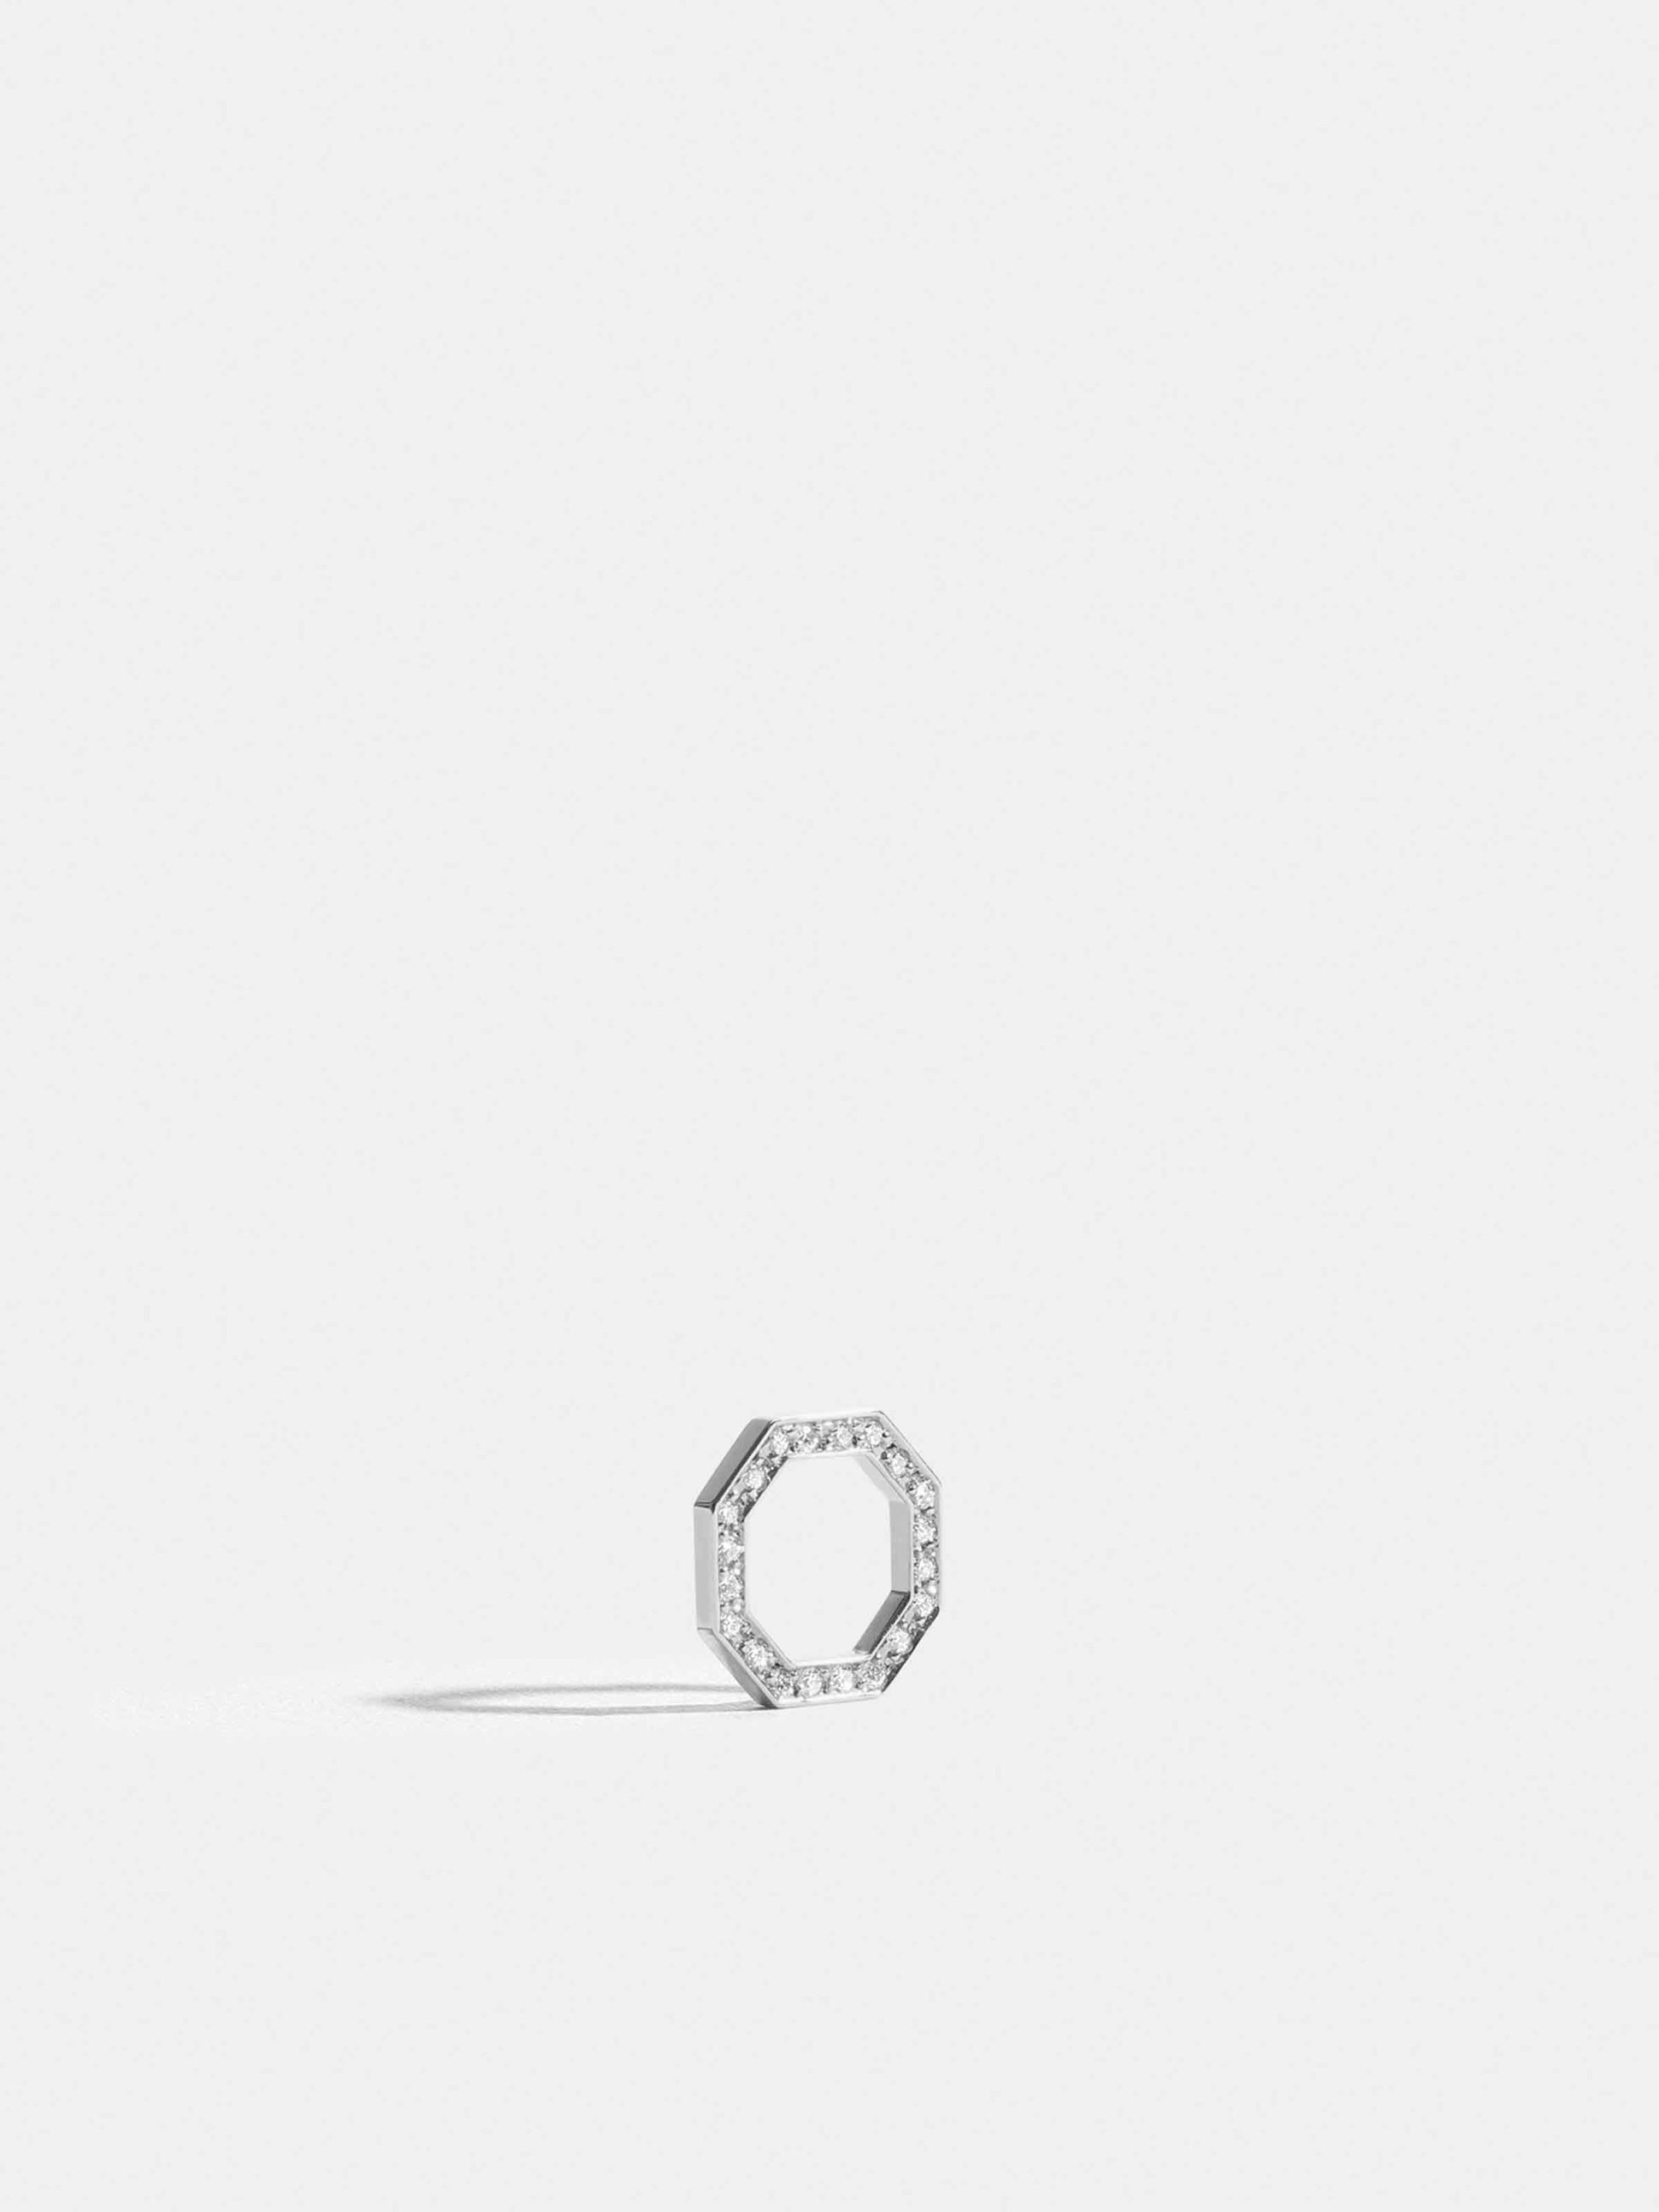 Motif Octogone en Or blanc éthique 18 carats certifié Fairmined et pavé de diamants de synthèse, sur cordon rose fuchsia.